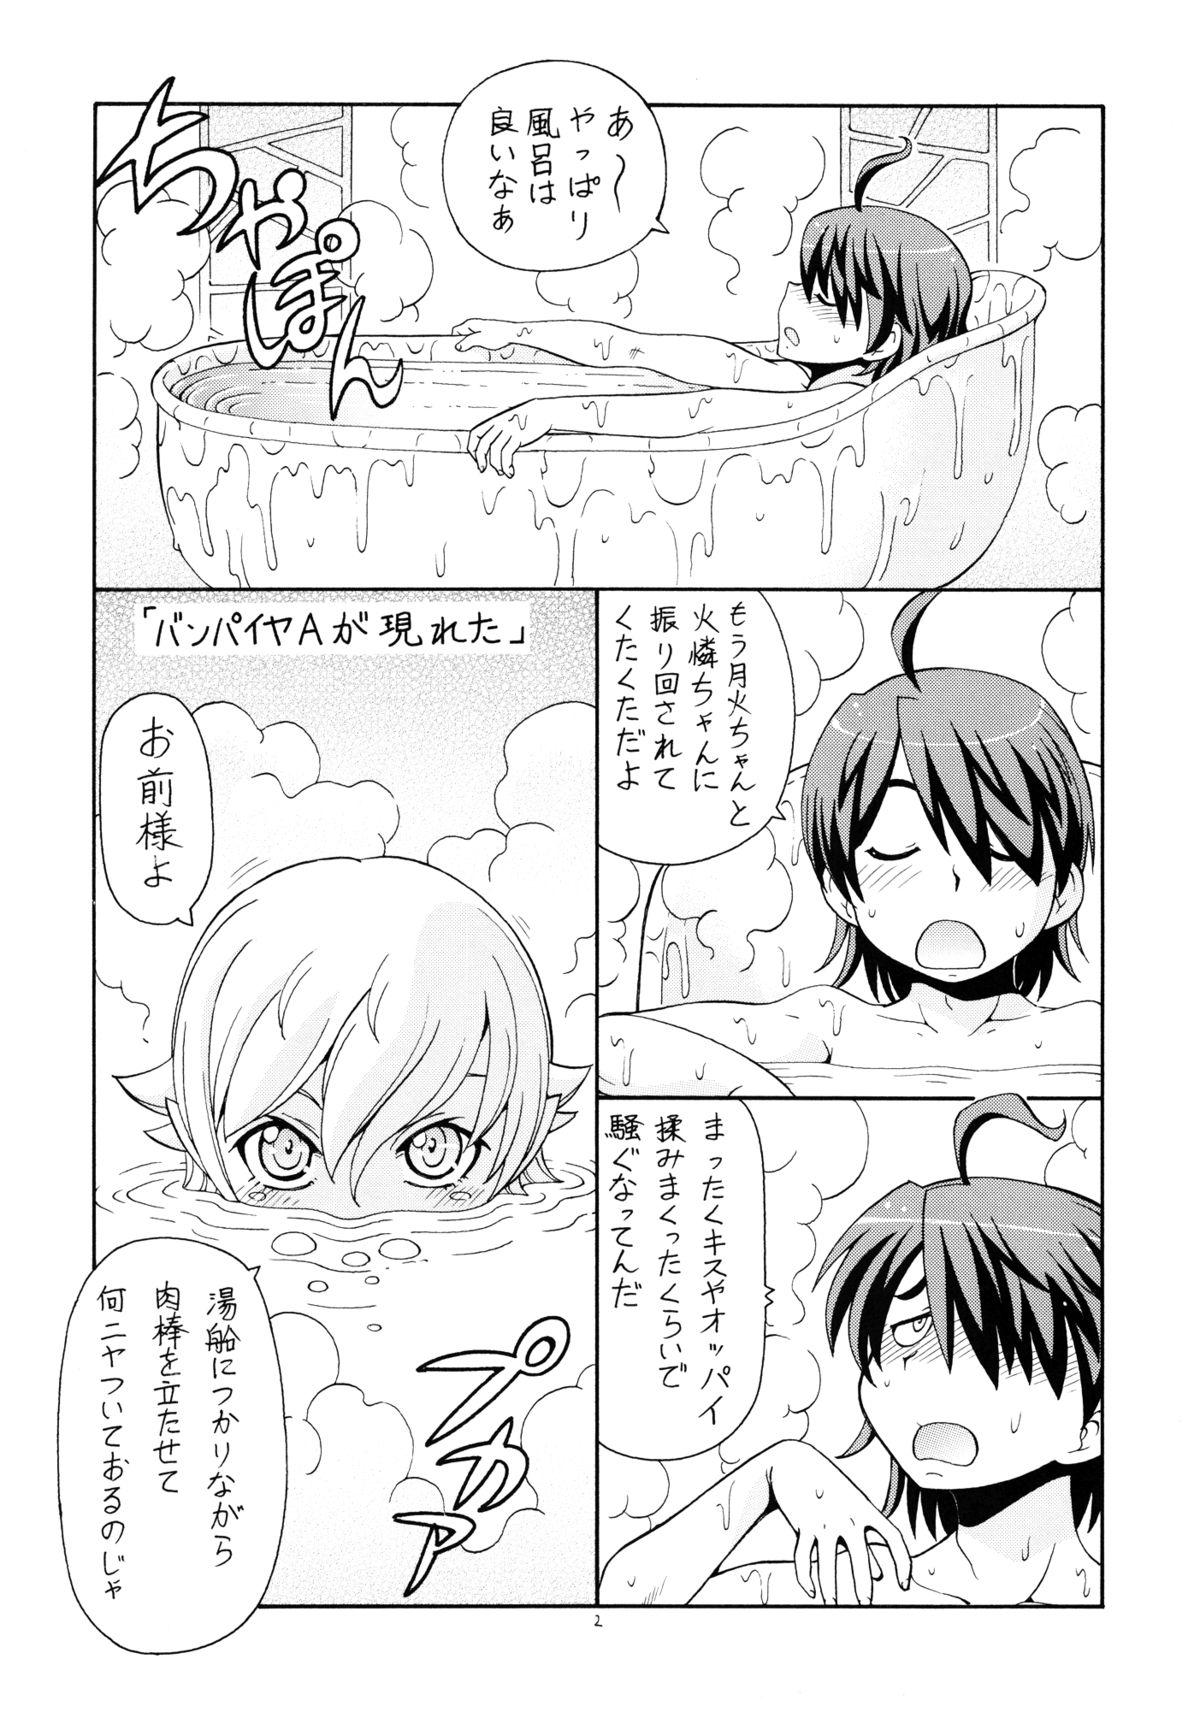 Tesao Hito ni Hakanai to Kaite "Araragi" to Yomu 5&6 - Bakemonogatari Hard Sex - Page 3